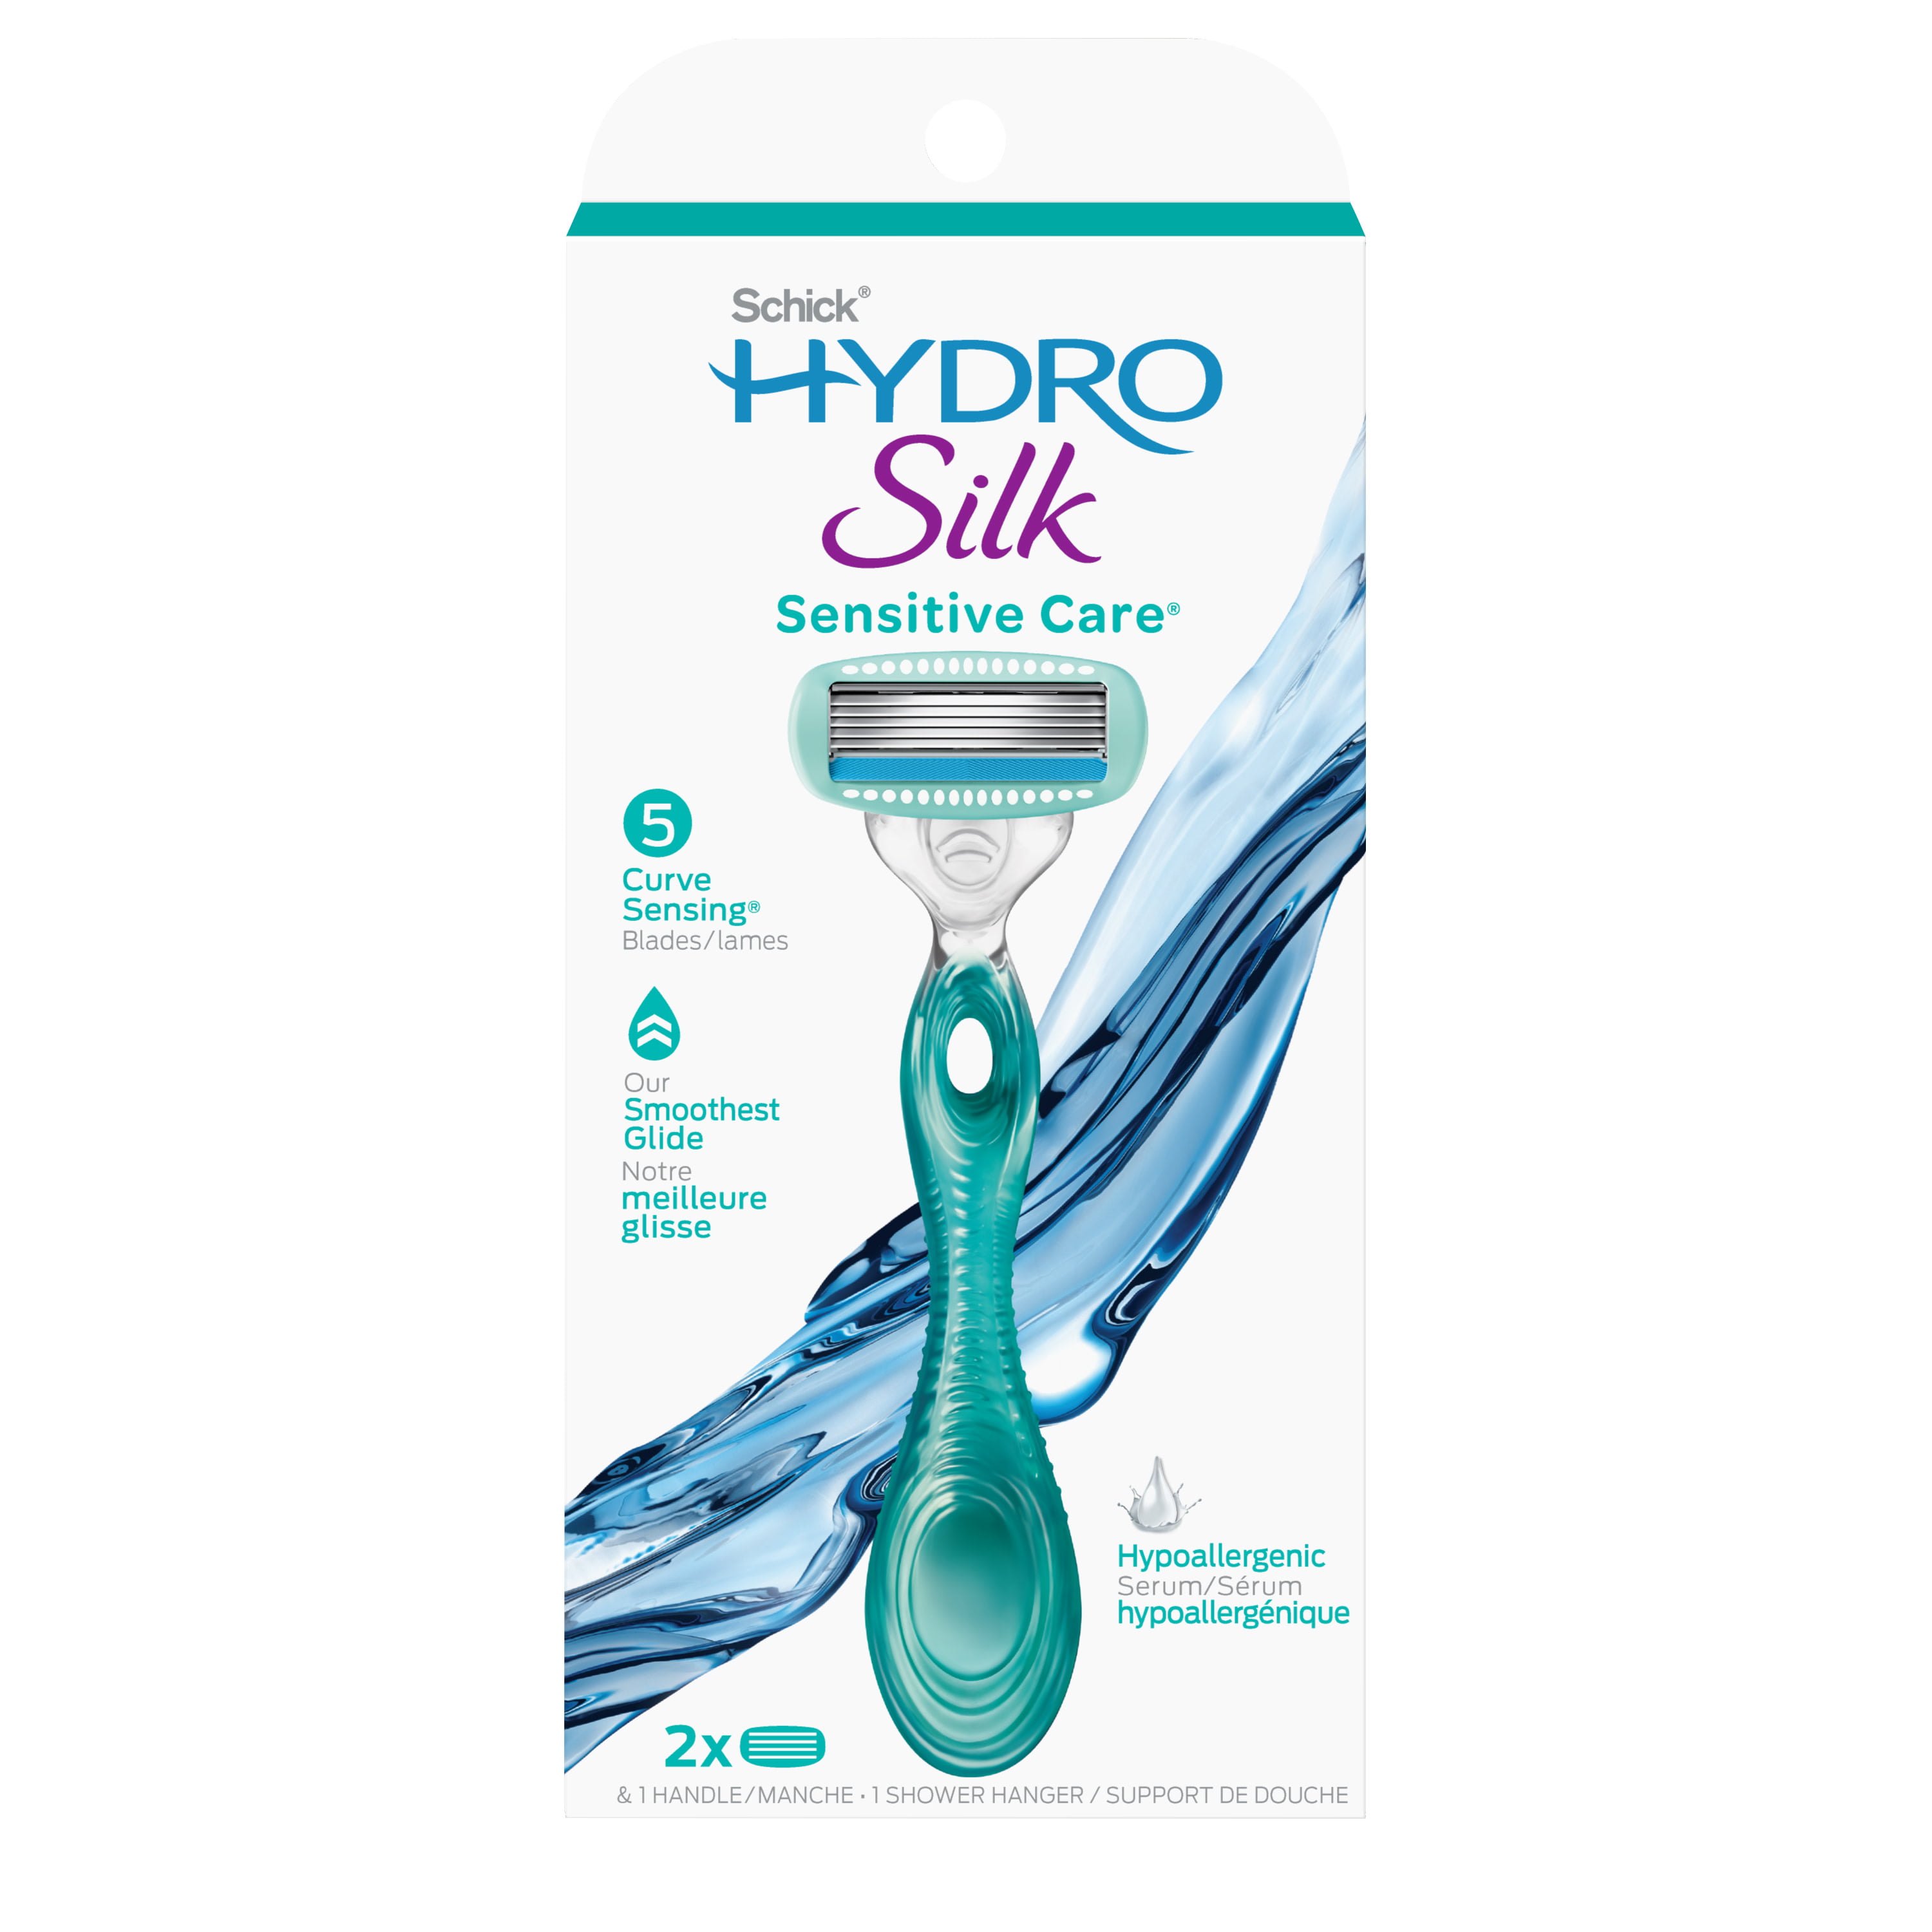 Schick Hydro Silk Razor - Sensitive Care